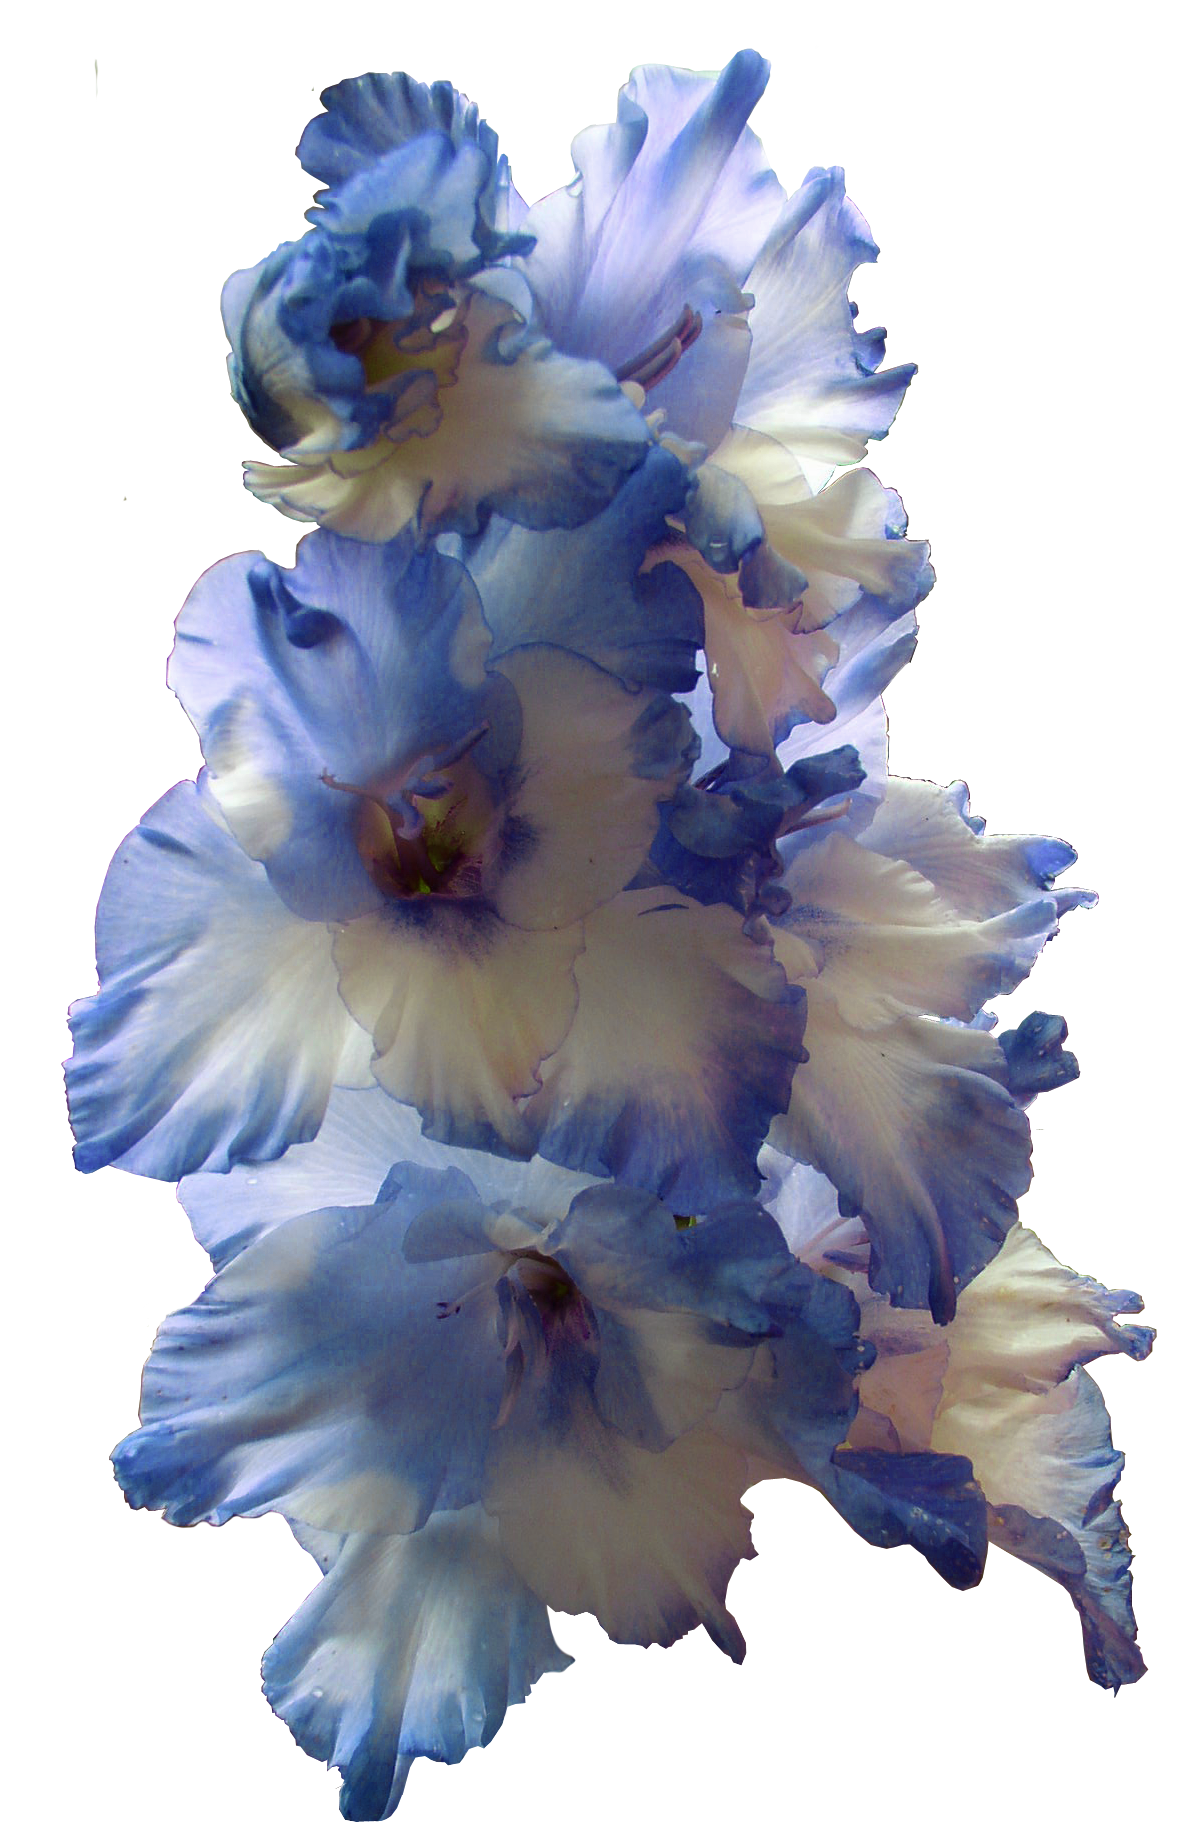 Gladiolus PNG Imajı